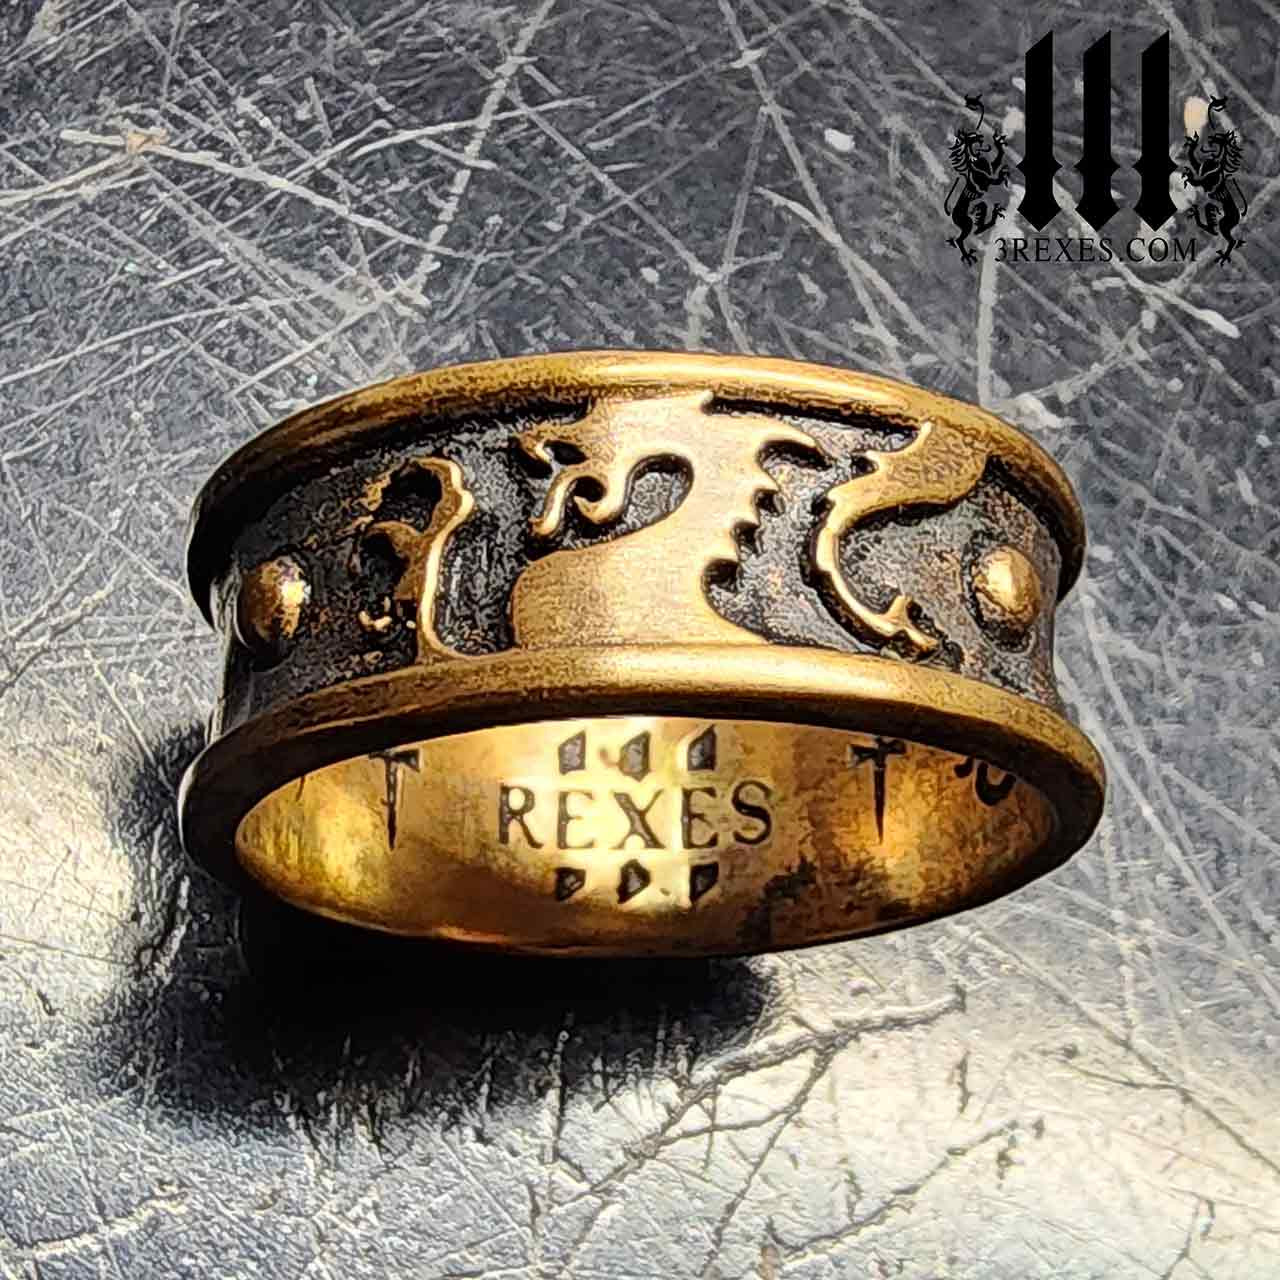 King Ring 4mm Basic Black Ring – Super Polished Matt Finish Ring for Men &  Women, Wedding Bands for Him & Her, Stainless Steel Ring, K32 – Black 7 |  Amazon.com